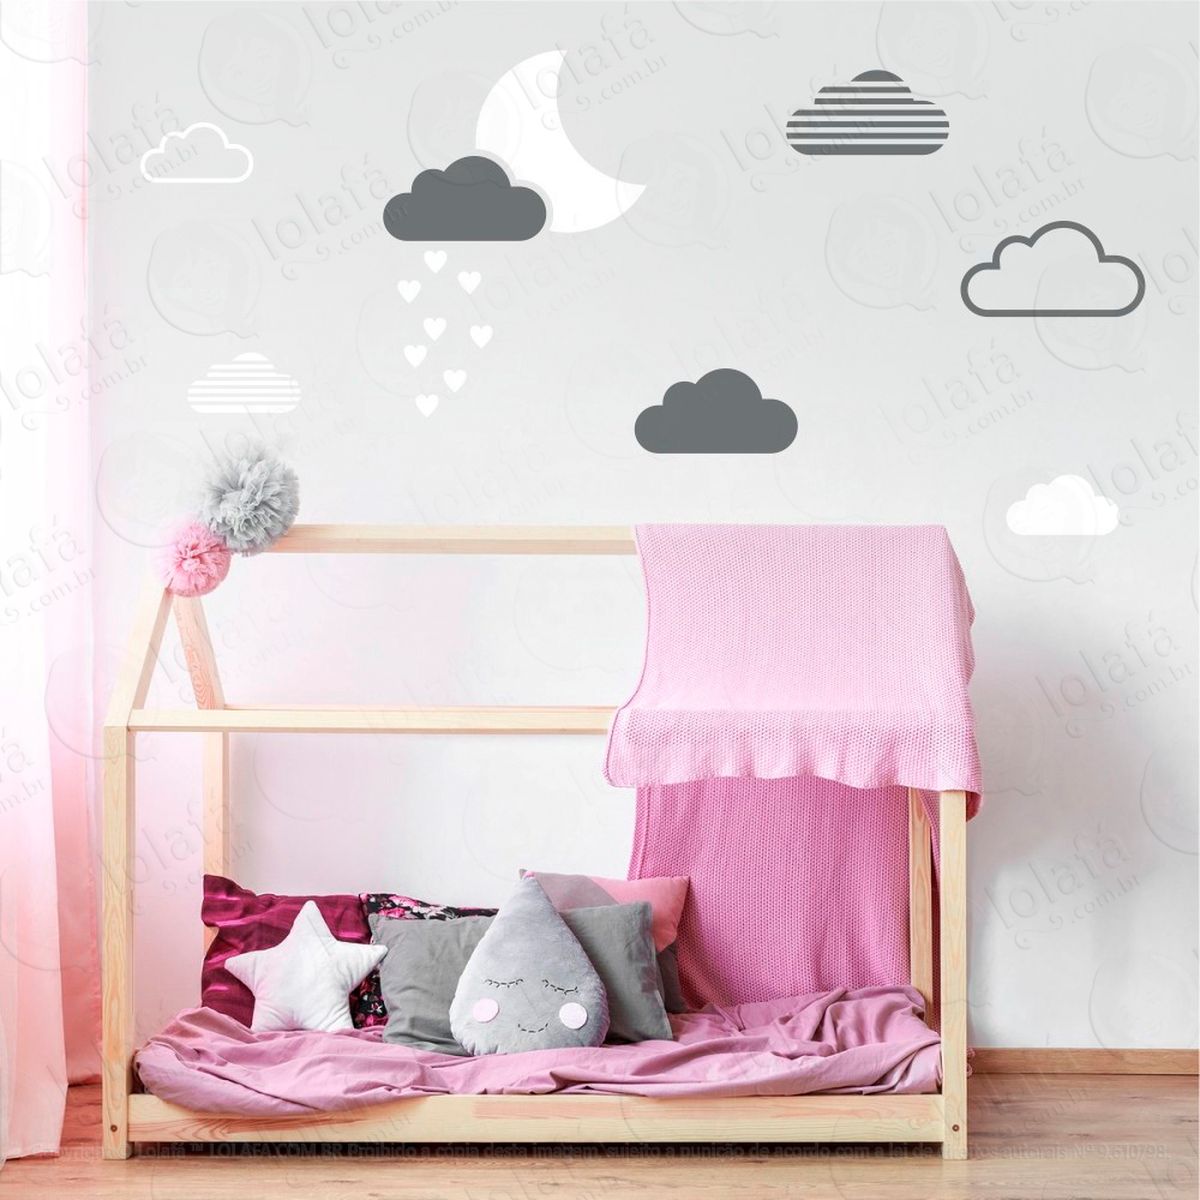 adesivos lua e nuvens 15 peças adesivos para quarto de bebê infantil - mod:886